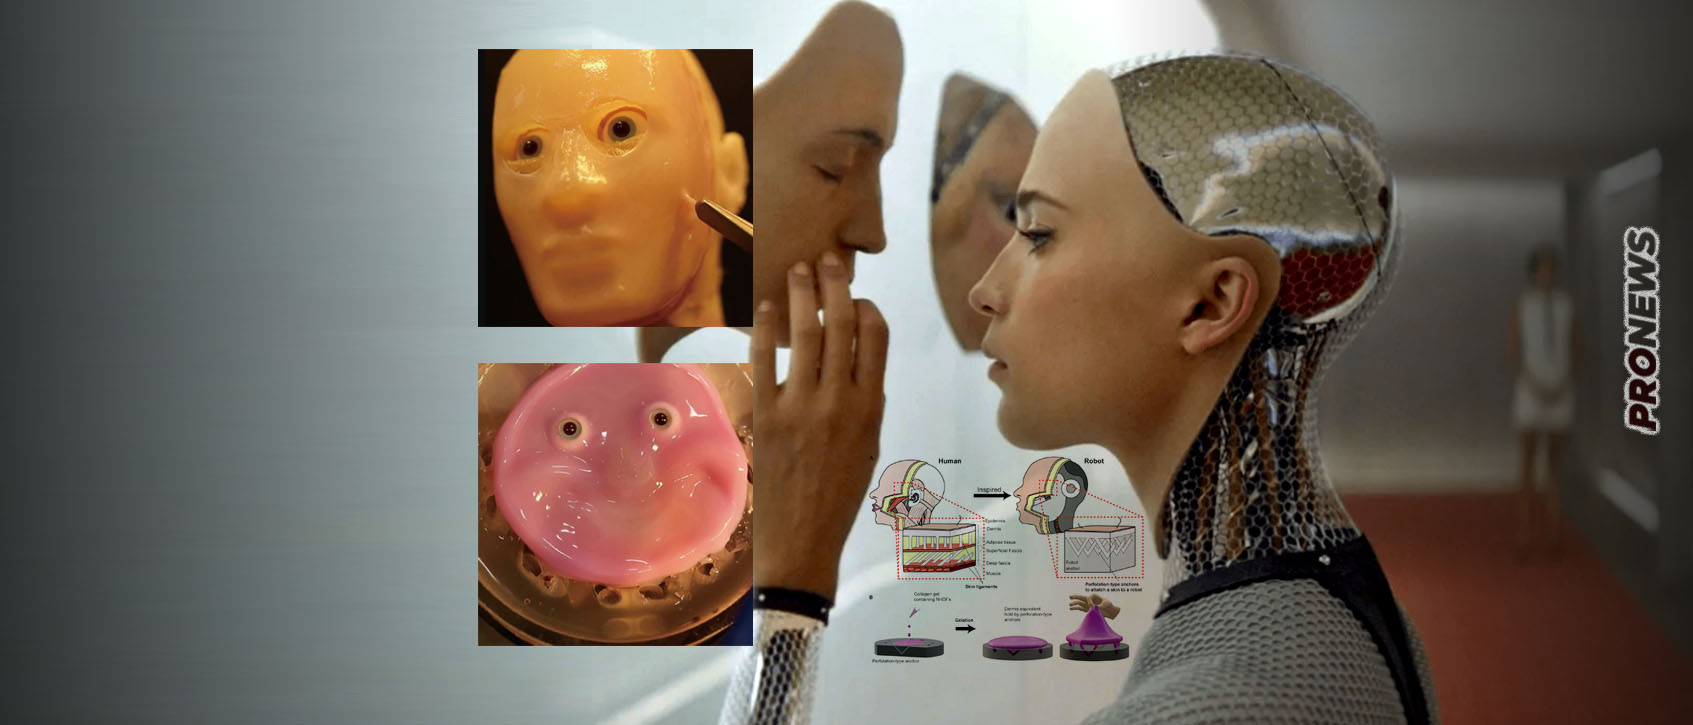 Τεχνητό δέρμα με ζωντανά ανθρώπινα κύτταρα για πρόσωπα ρομπότ έφτιαξαν Ιάπωνες επιστήμονες!